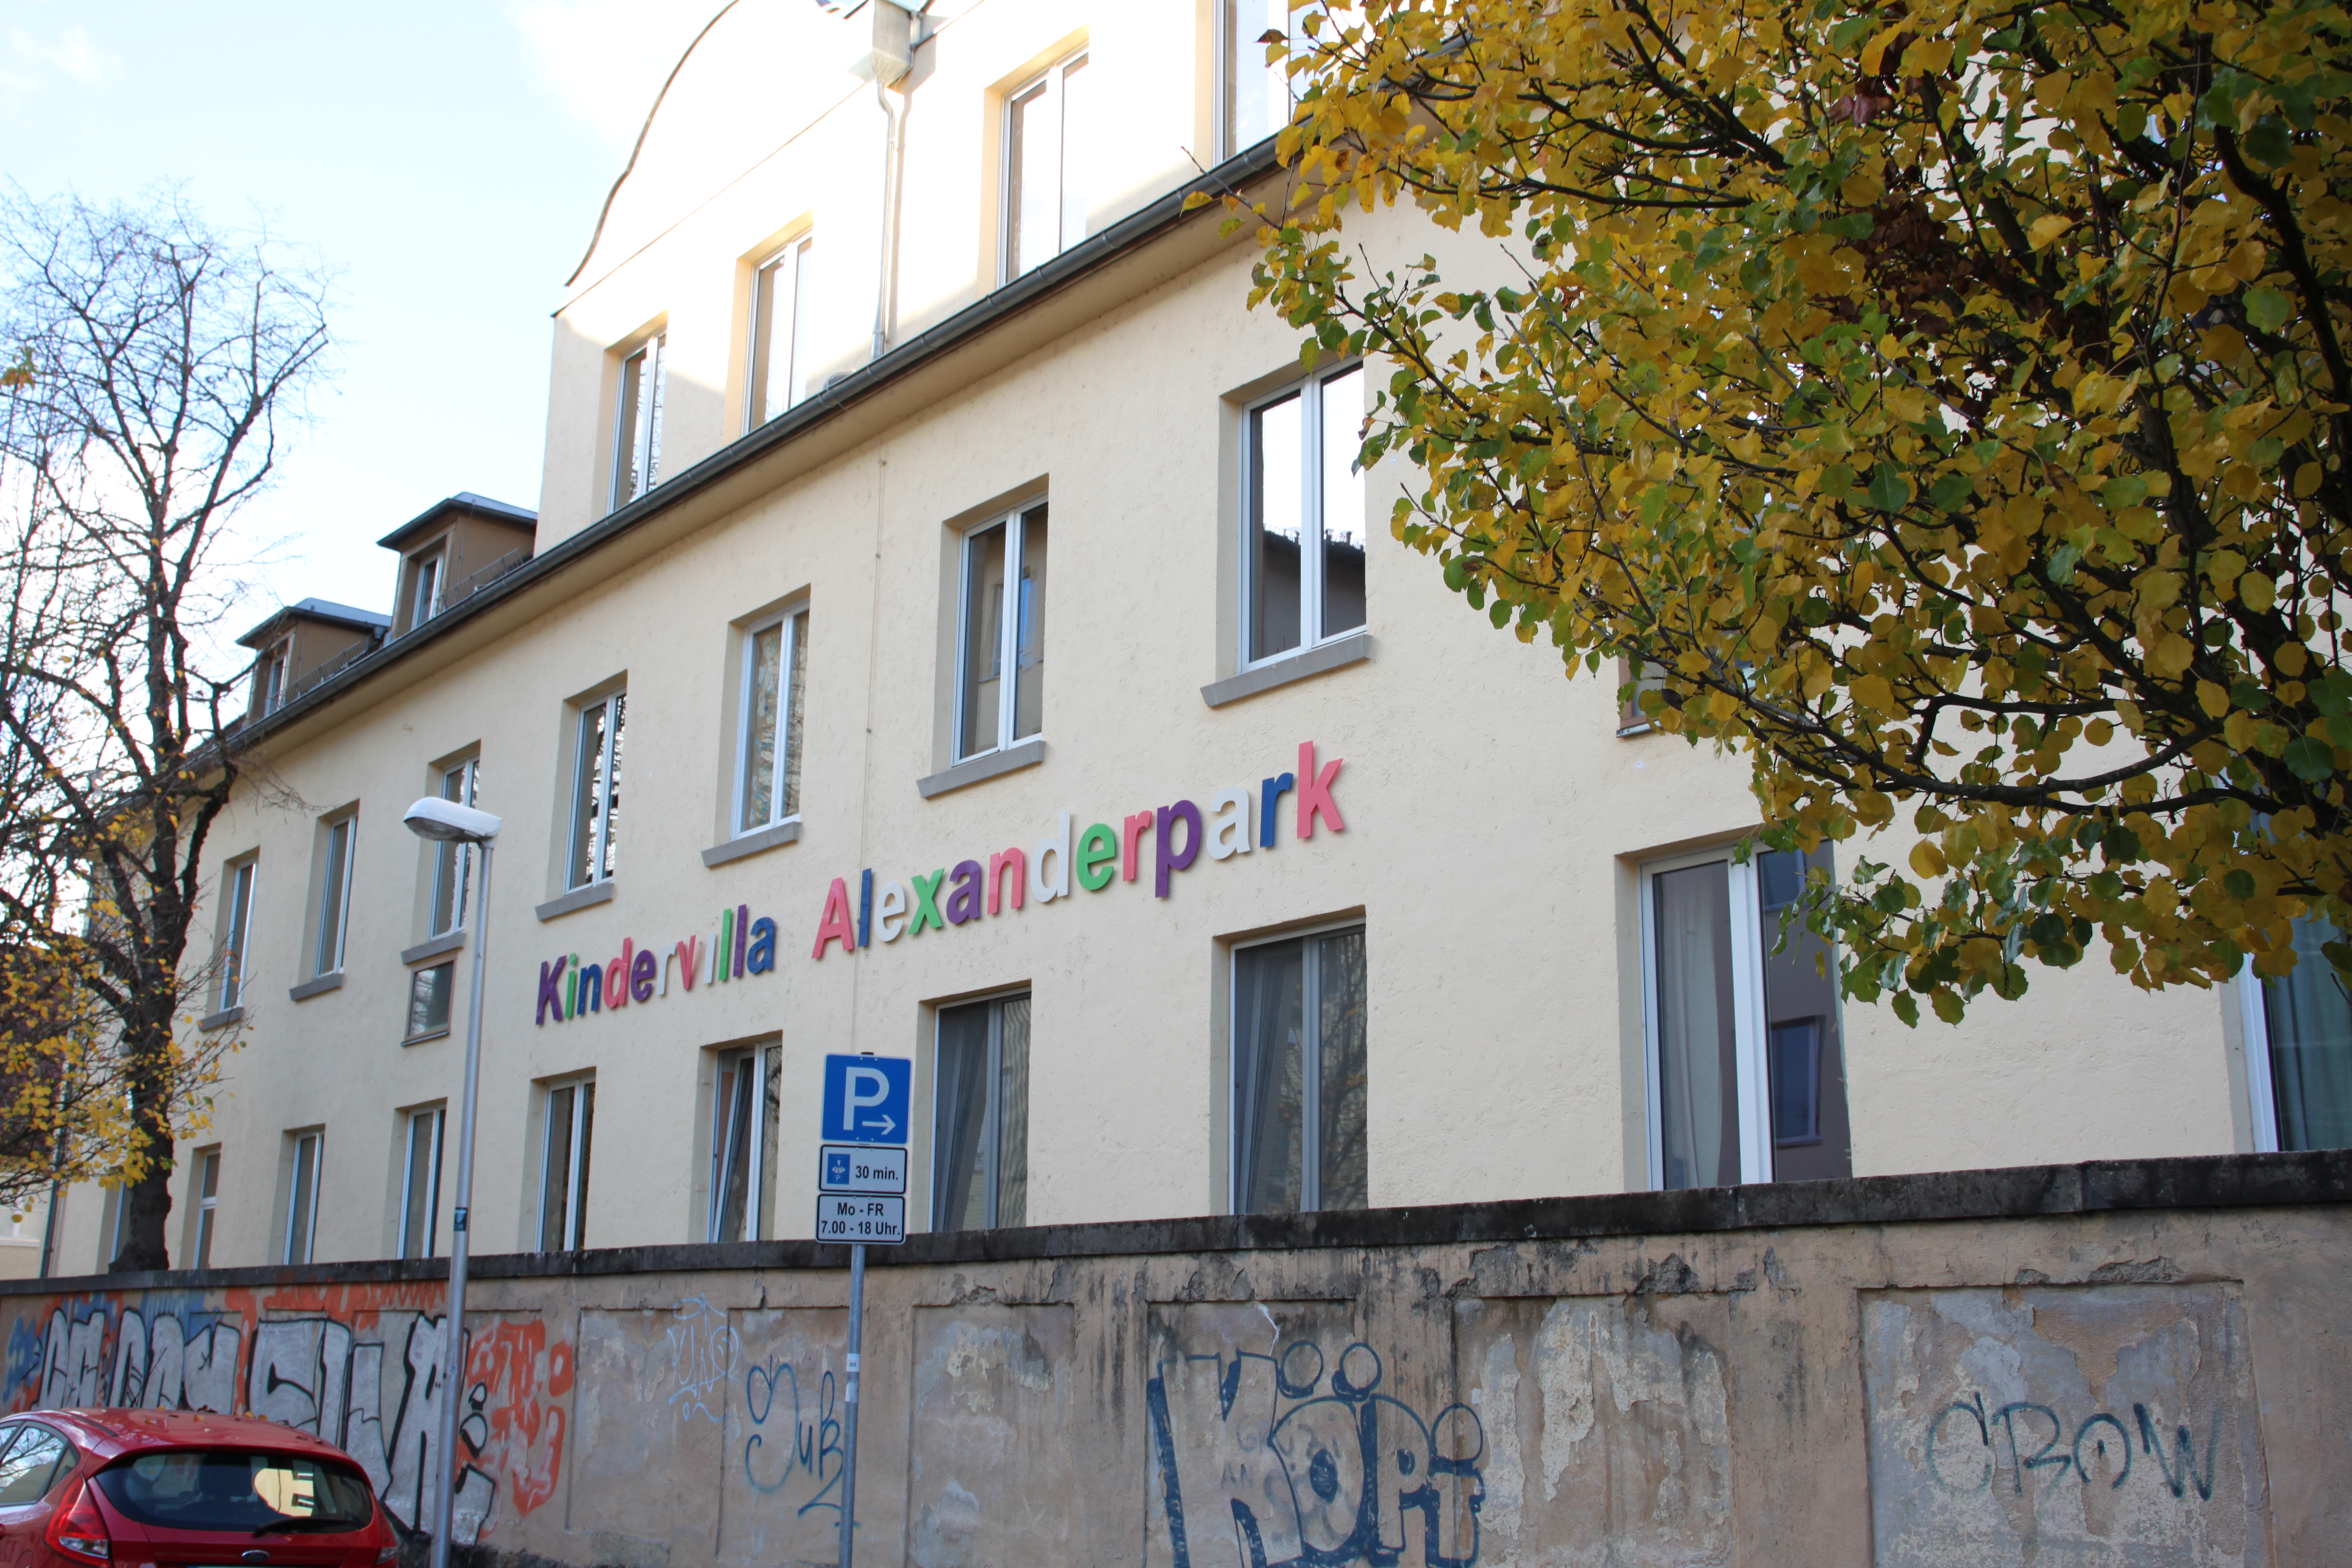 Auf dem Bild ist die Kindervilla mit Schriftzug abgebildet. Im Vordergrund ist eine Mauer mit Graffiti.